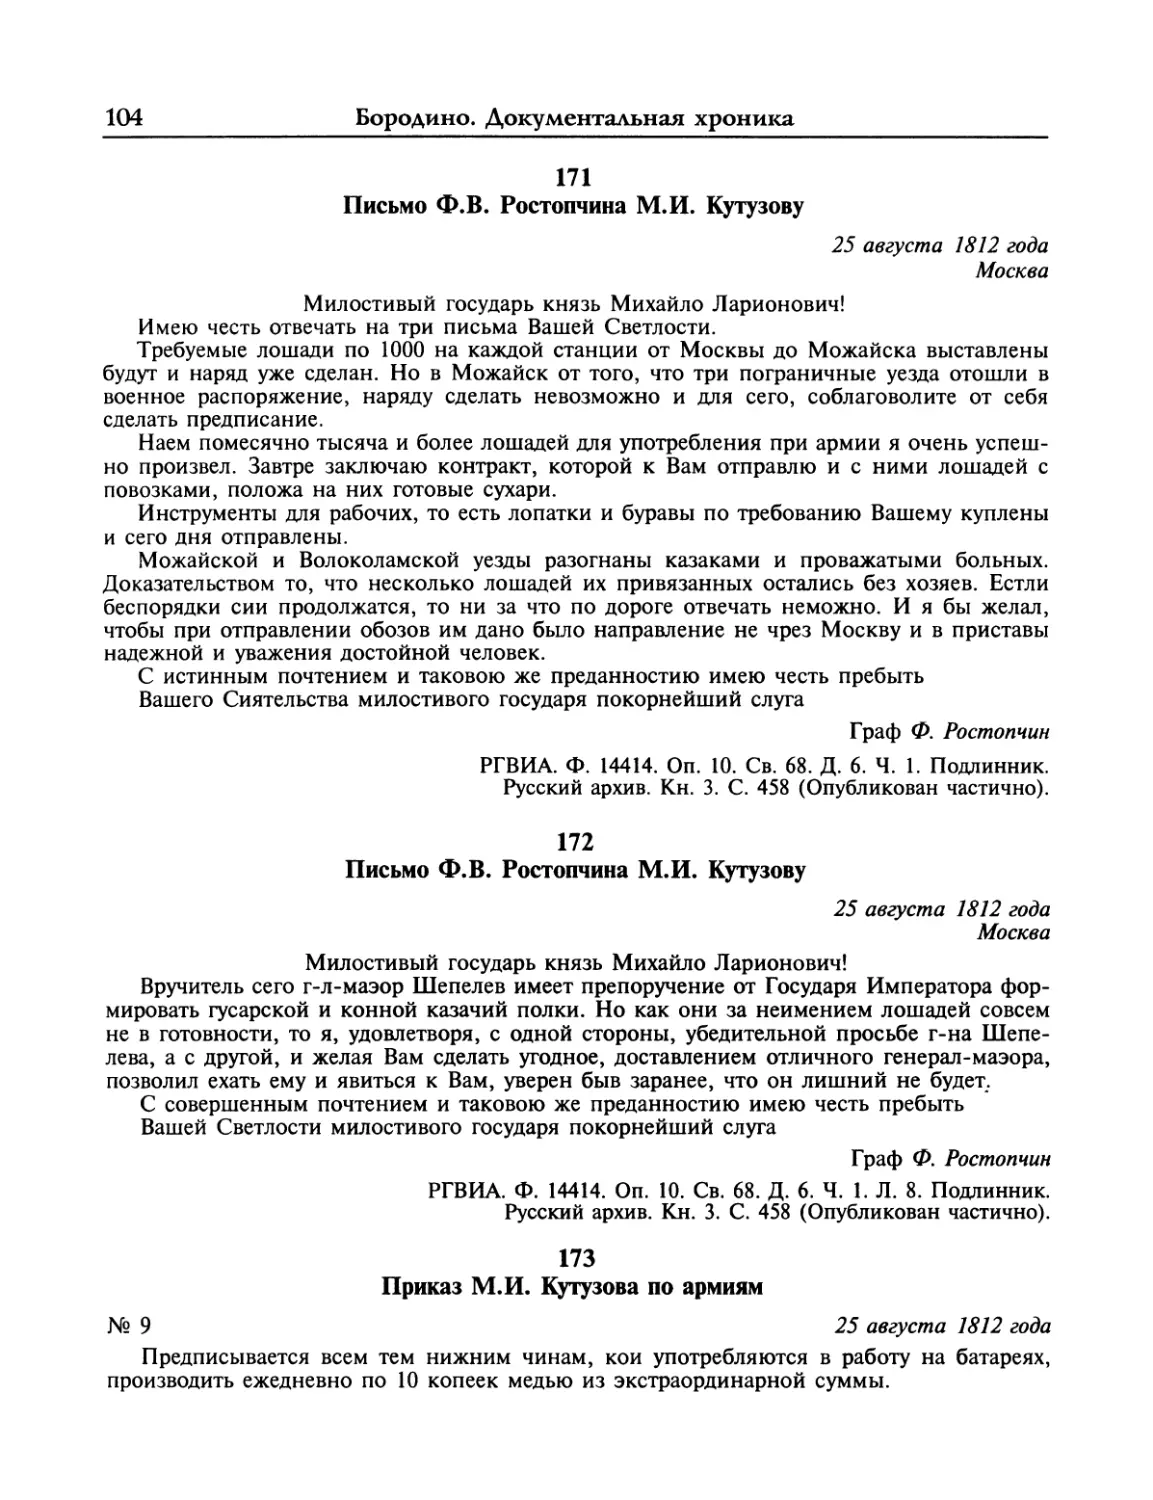 Письмо Ф.В.Ростопчина М.И.Кутузову
Приказ М.И.Кутузова по армиям